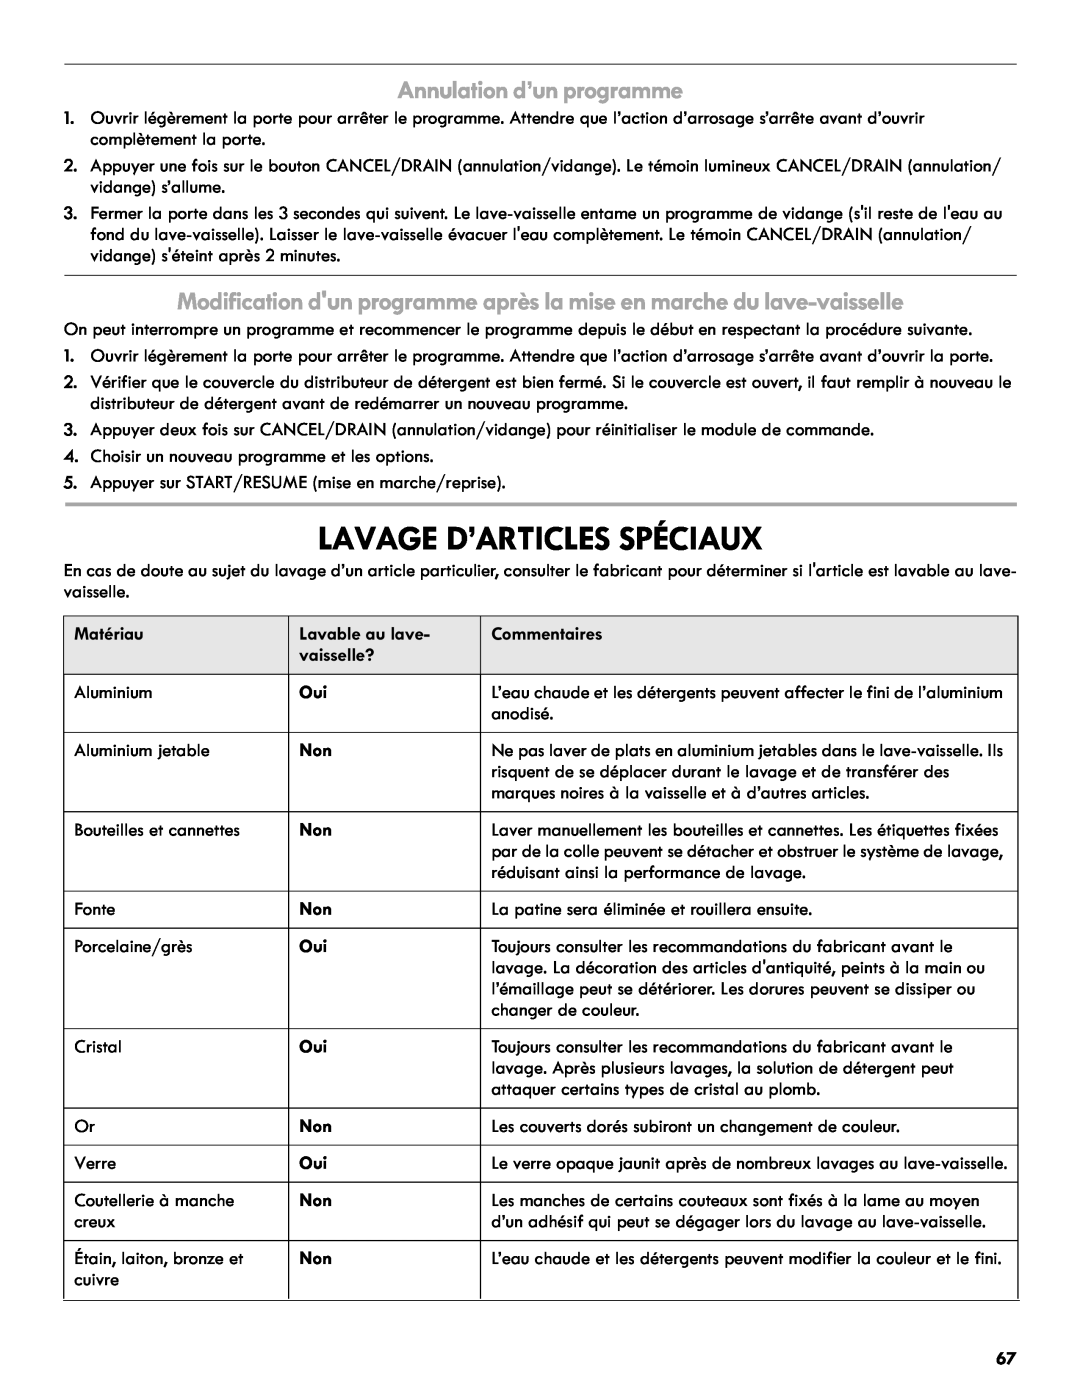 Kenmore 665.1301 manual Lavage D’Articles Spéciaux, Annulation d’un programme 